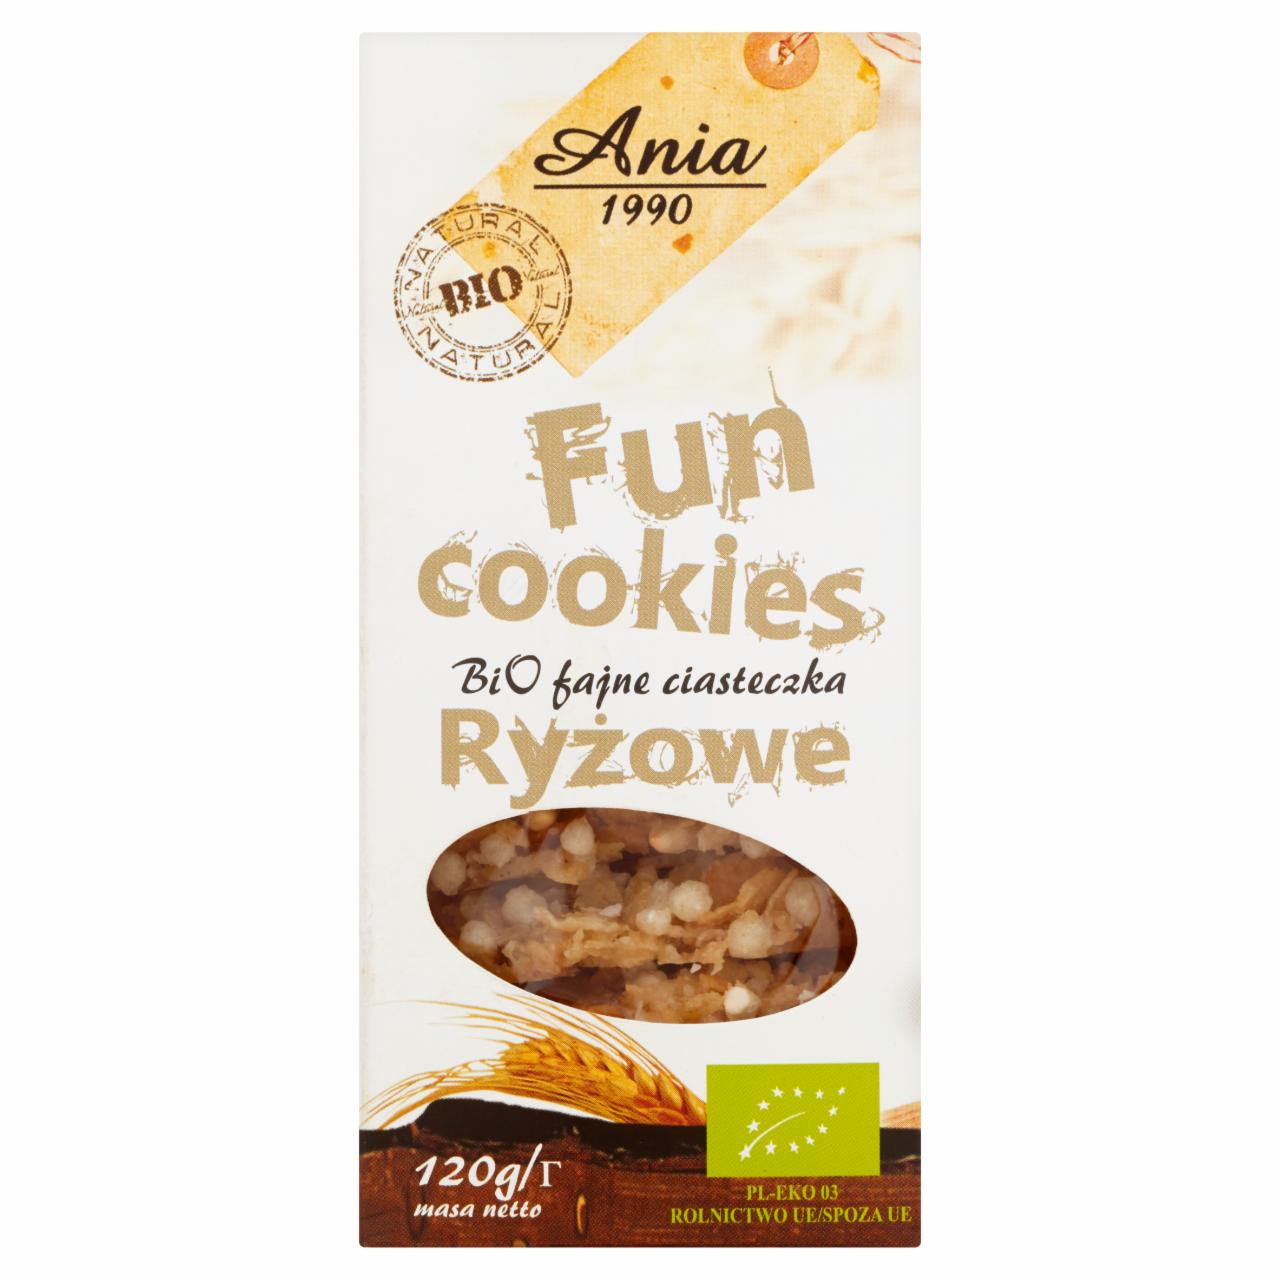 Zdjęcia - Ania Fun Cookies Bio fajne ciasteczka ryżowe 120 g